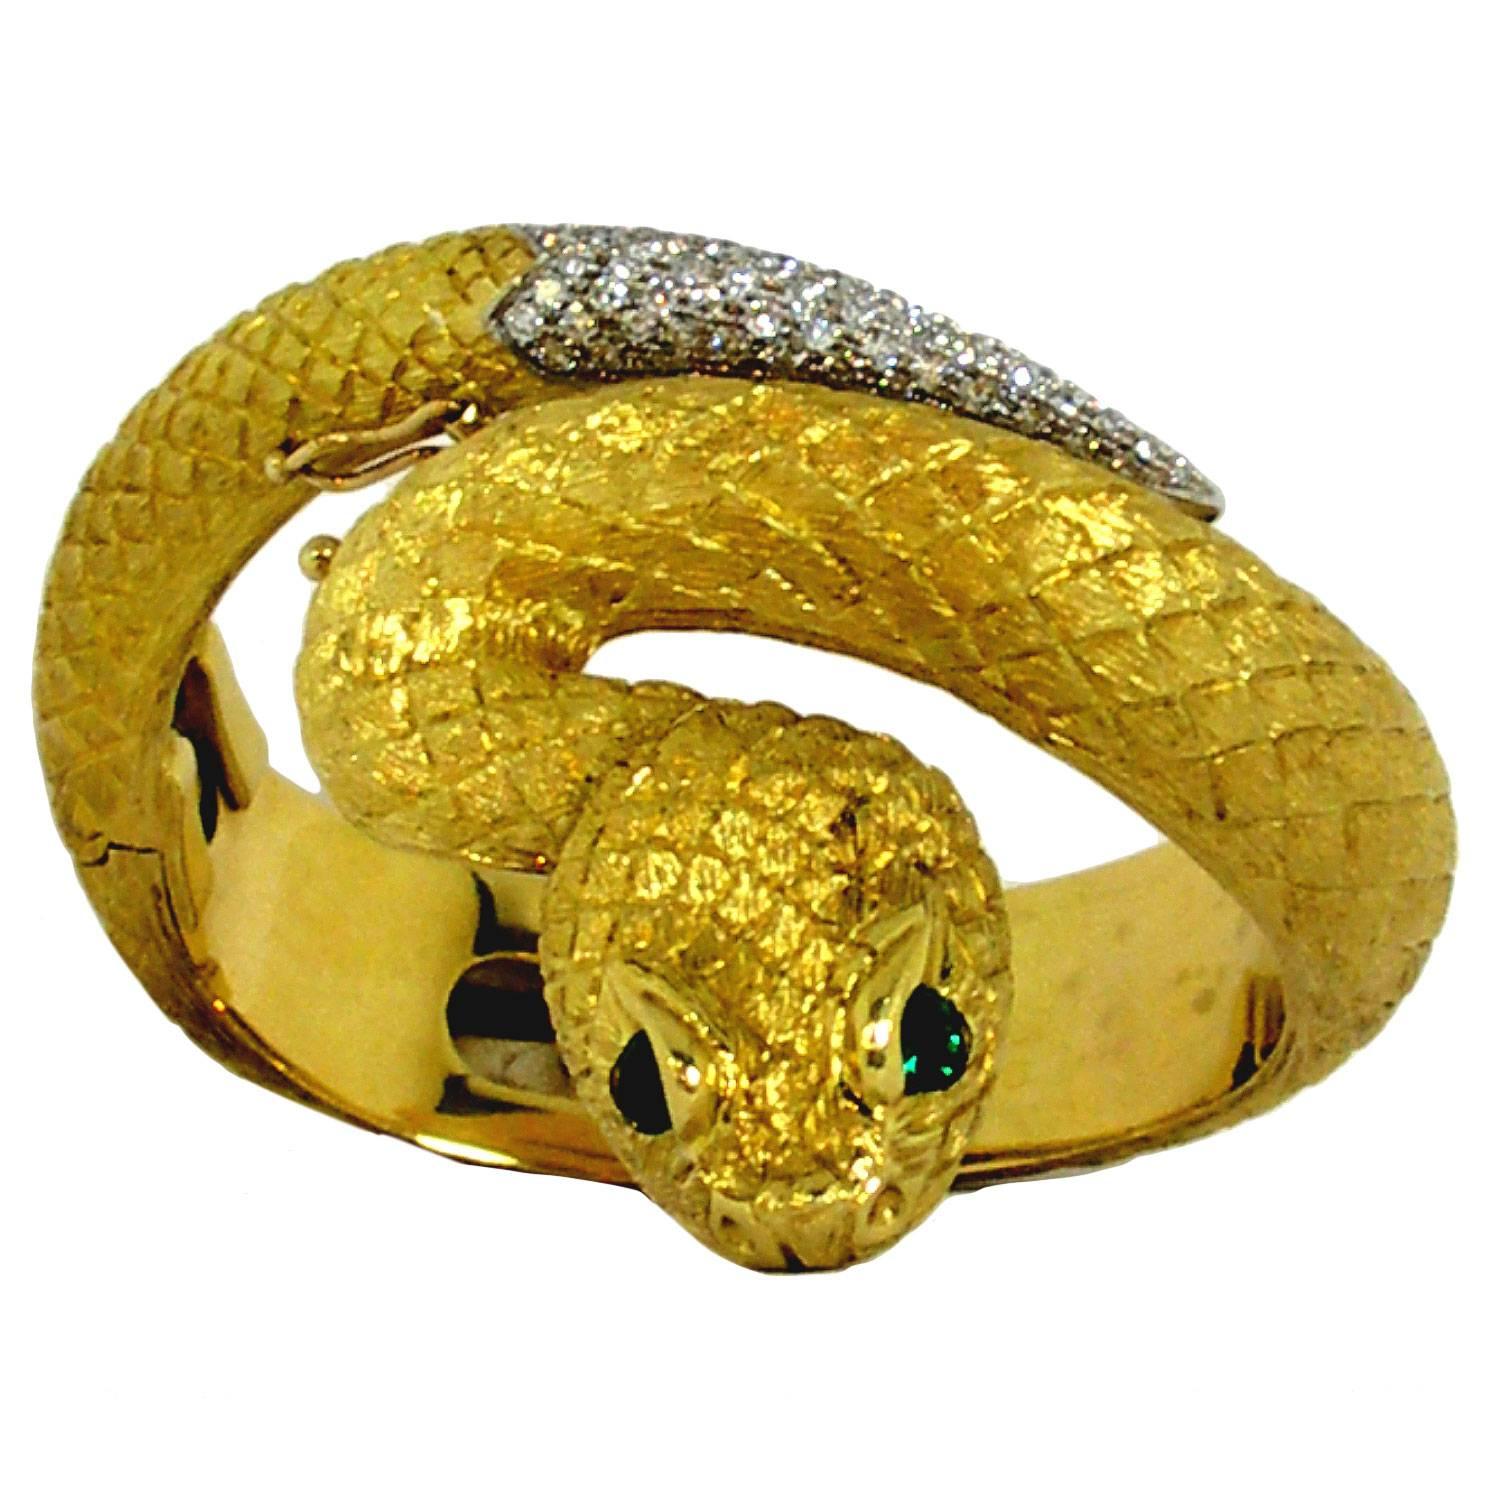 Amazing Italian Gold Snake Bangle Bracelet